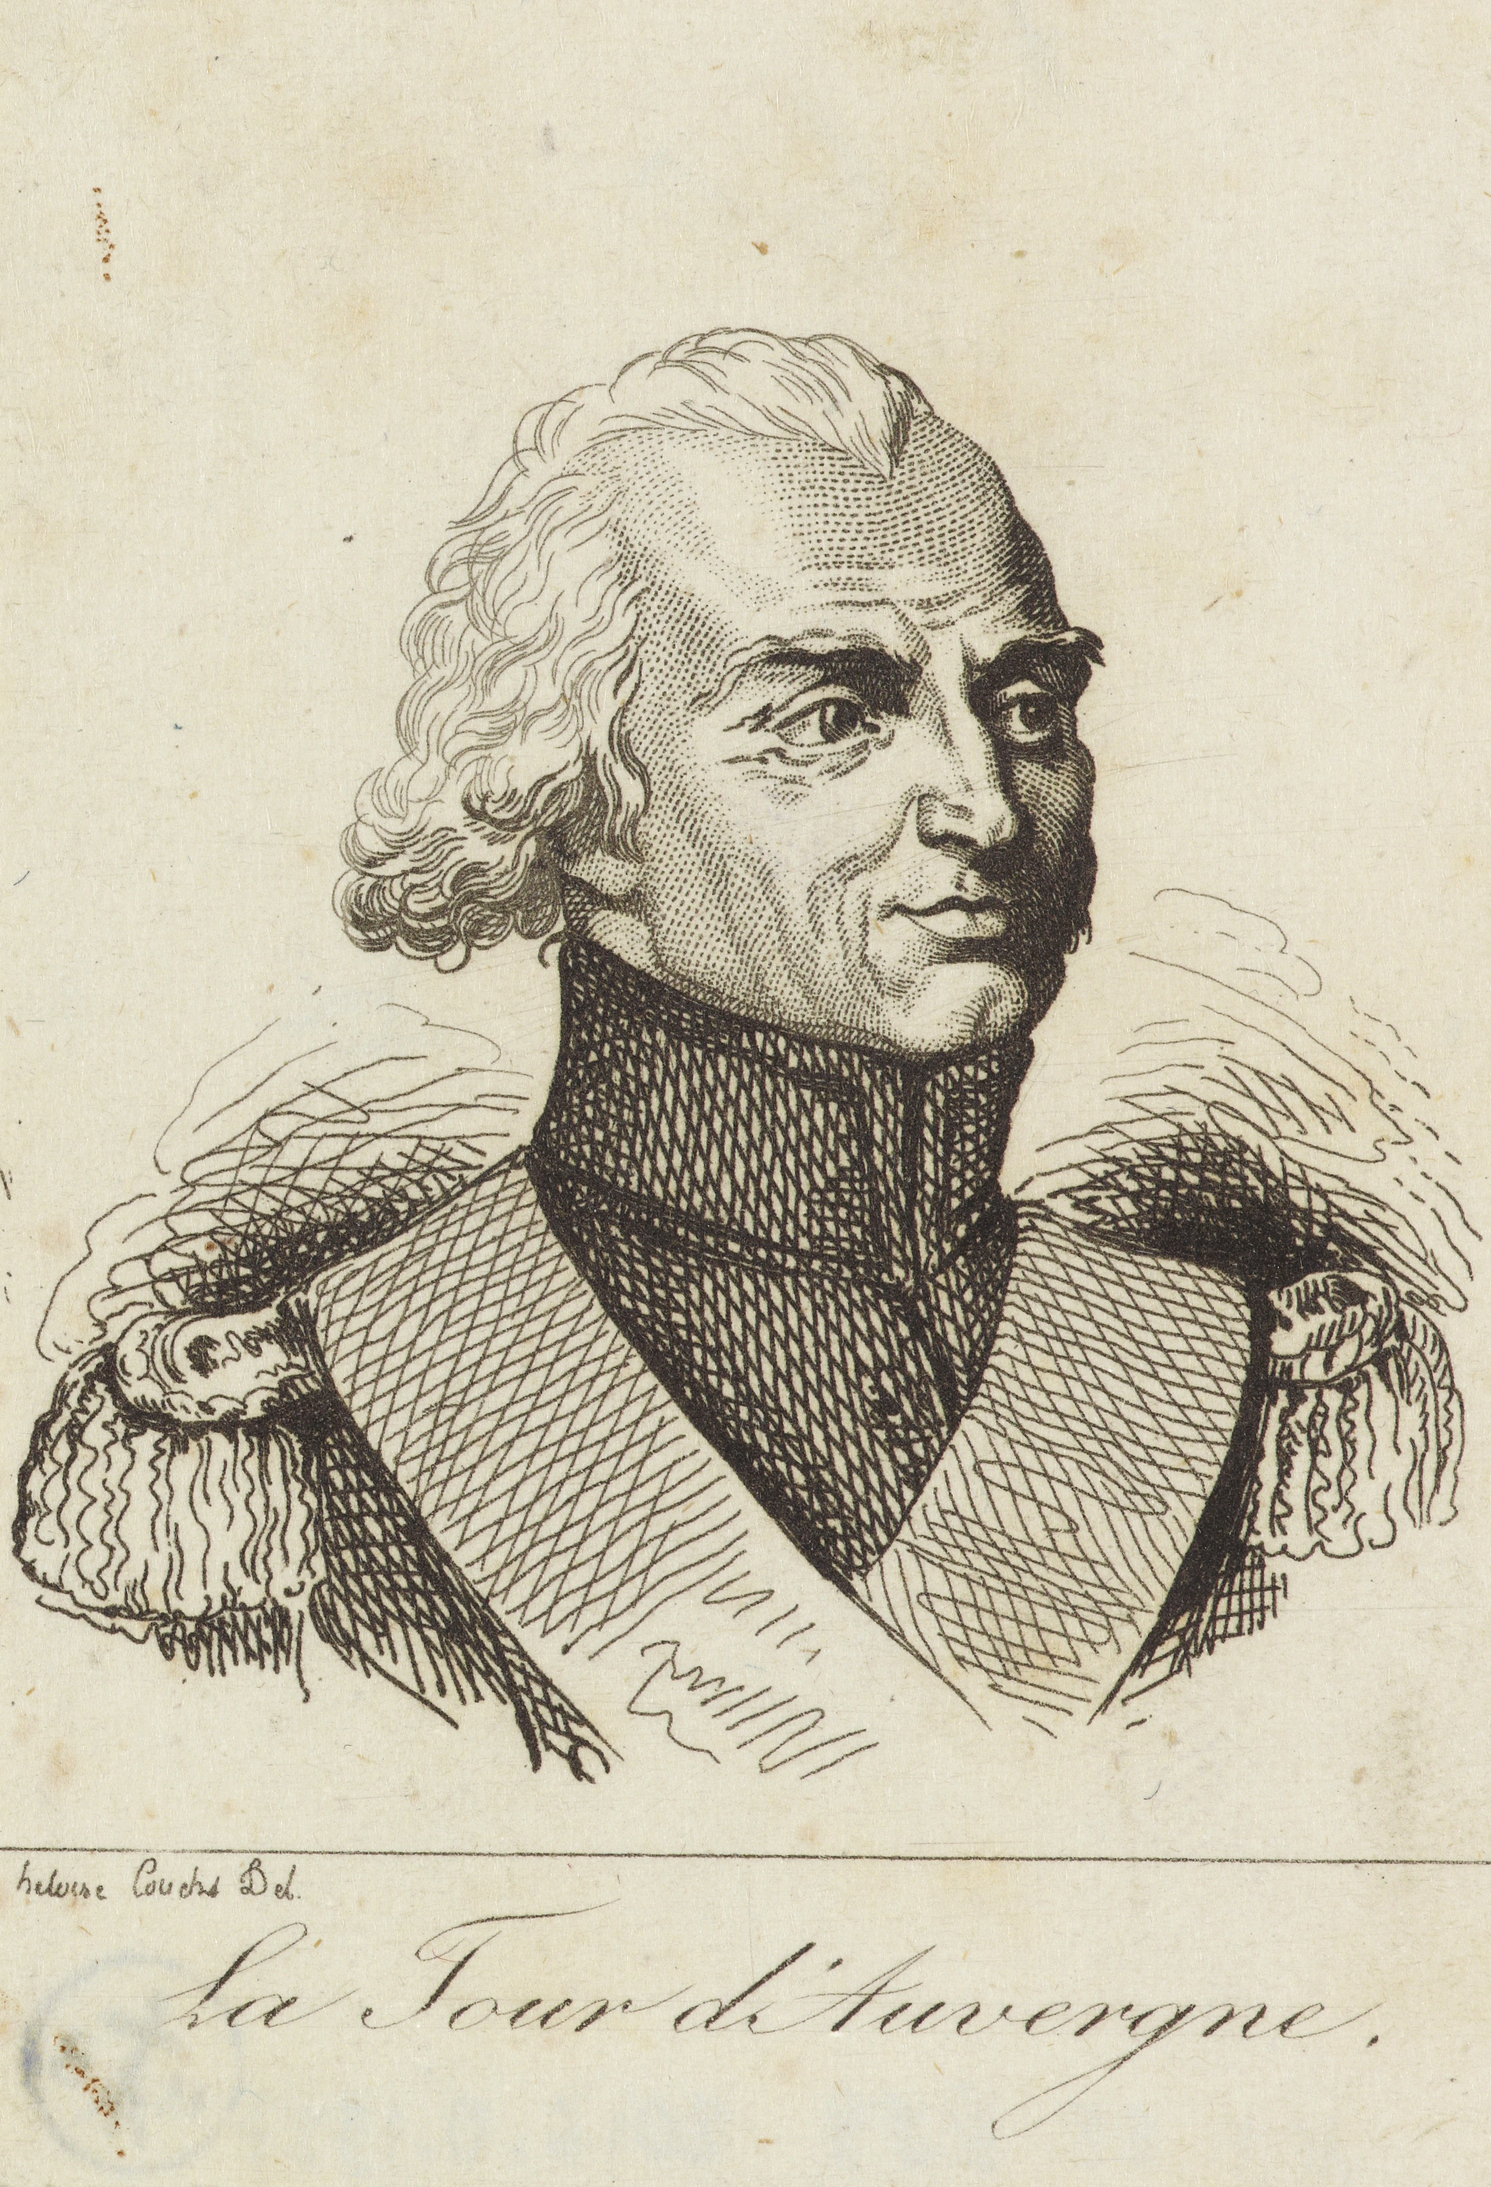 T. M. Corret de la Tour d’Auvergne